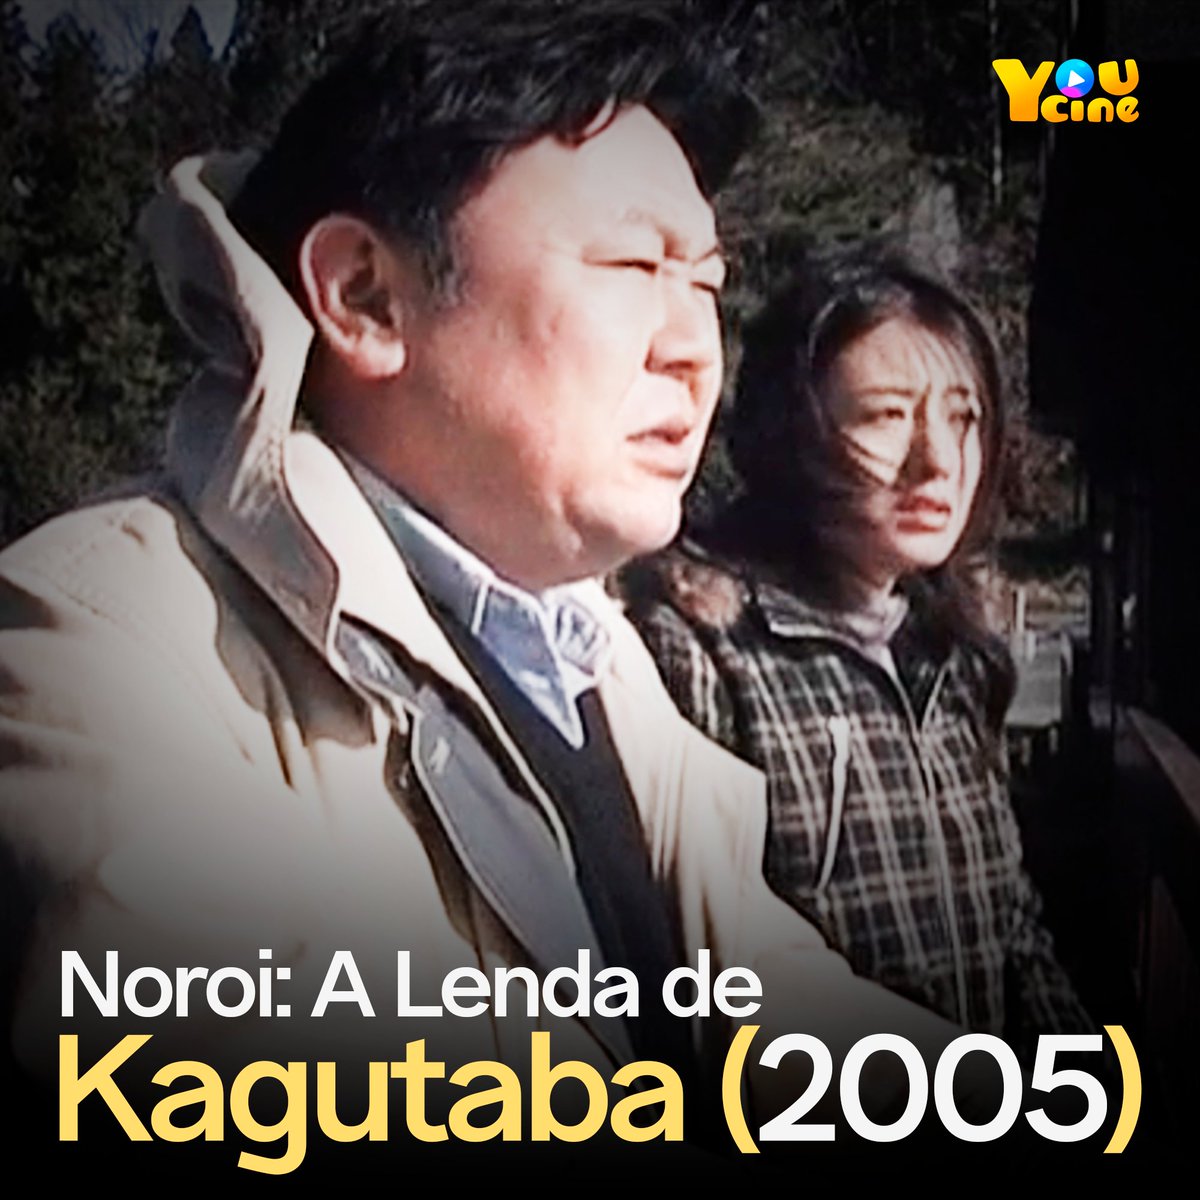 👹 NOROI: A LENDA DE KAGUTABA (2005) 👹

'Um documentarista resolve pesquisar uma sequência de eventos paranormais, e descobre da pior maneira que um antigo demônio está por trás delas.'